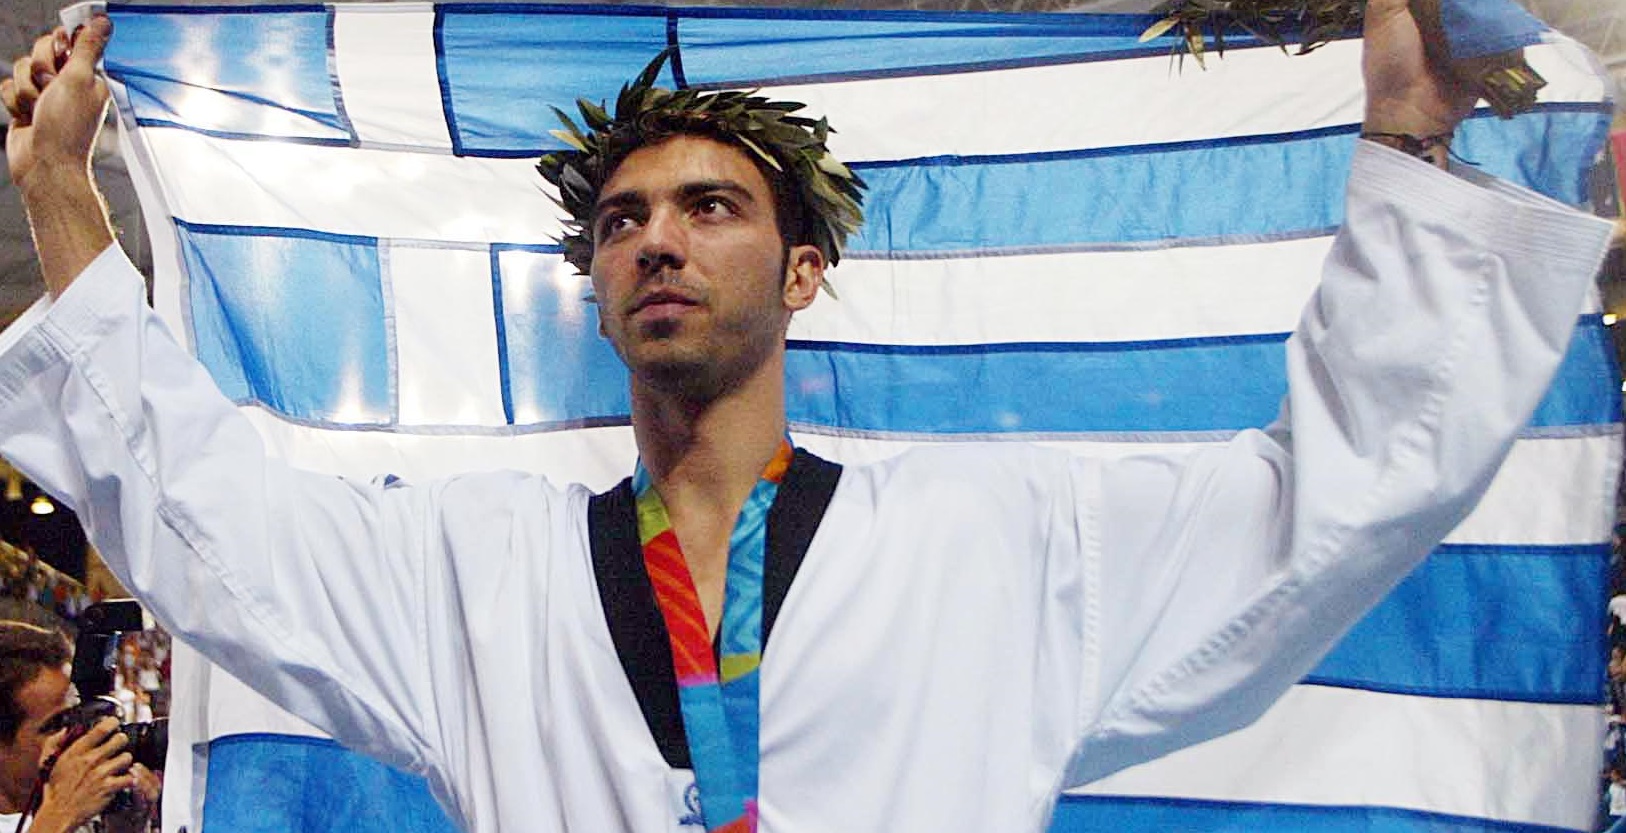 Πέθανε από καρκίνο ο ολυμπιονίκης Αλέξανδρος Νικολαΐδης – Συγκλονίζει η ανάρτησή του